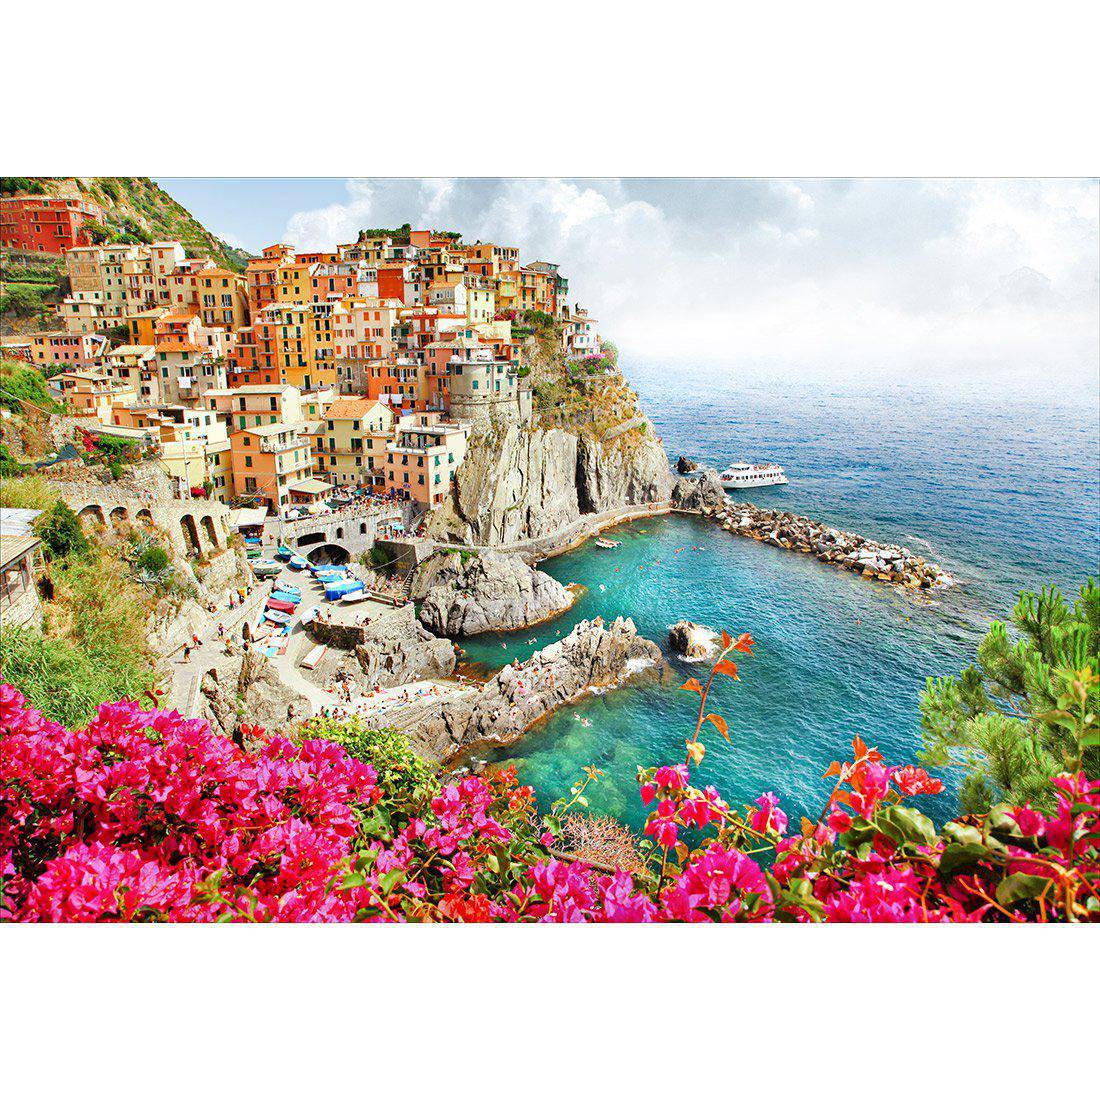 Cinque Terre in Italy Canvas Art-Canvas-Wall Art Designs-45x30cm-Canvas - No Frame-Wall Art Designs